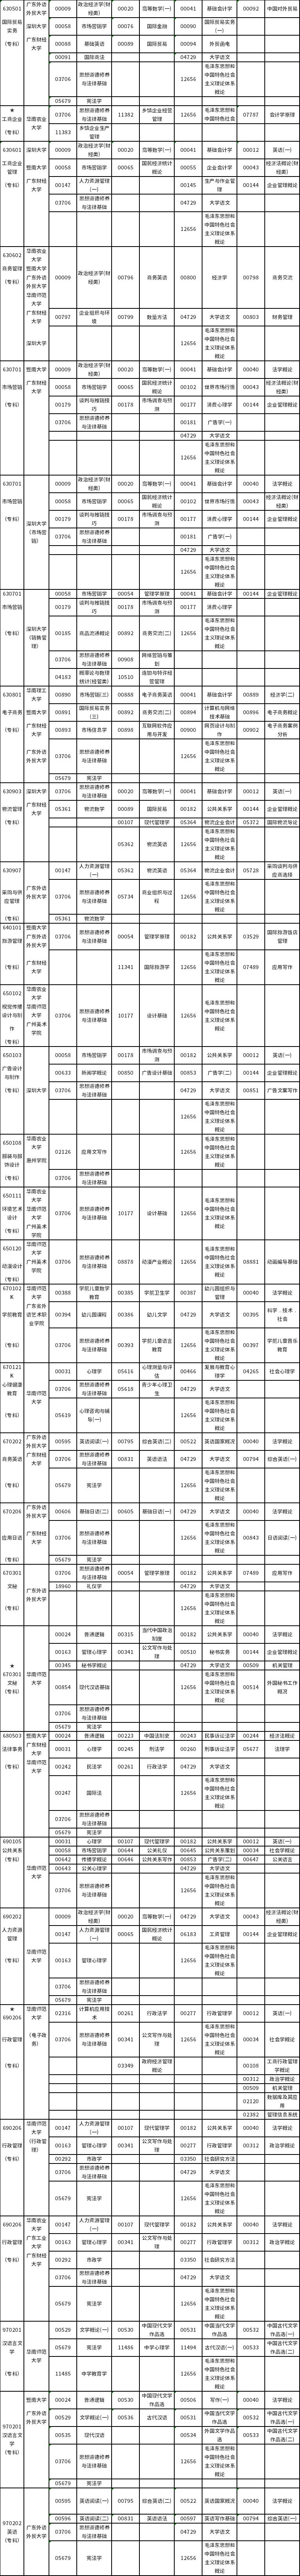 广东2022年10月自考开考专业及考试科目一览表